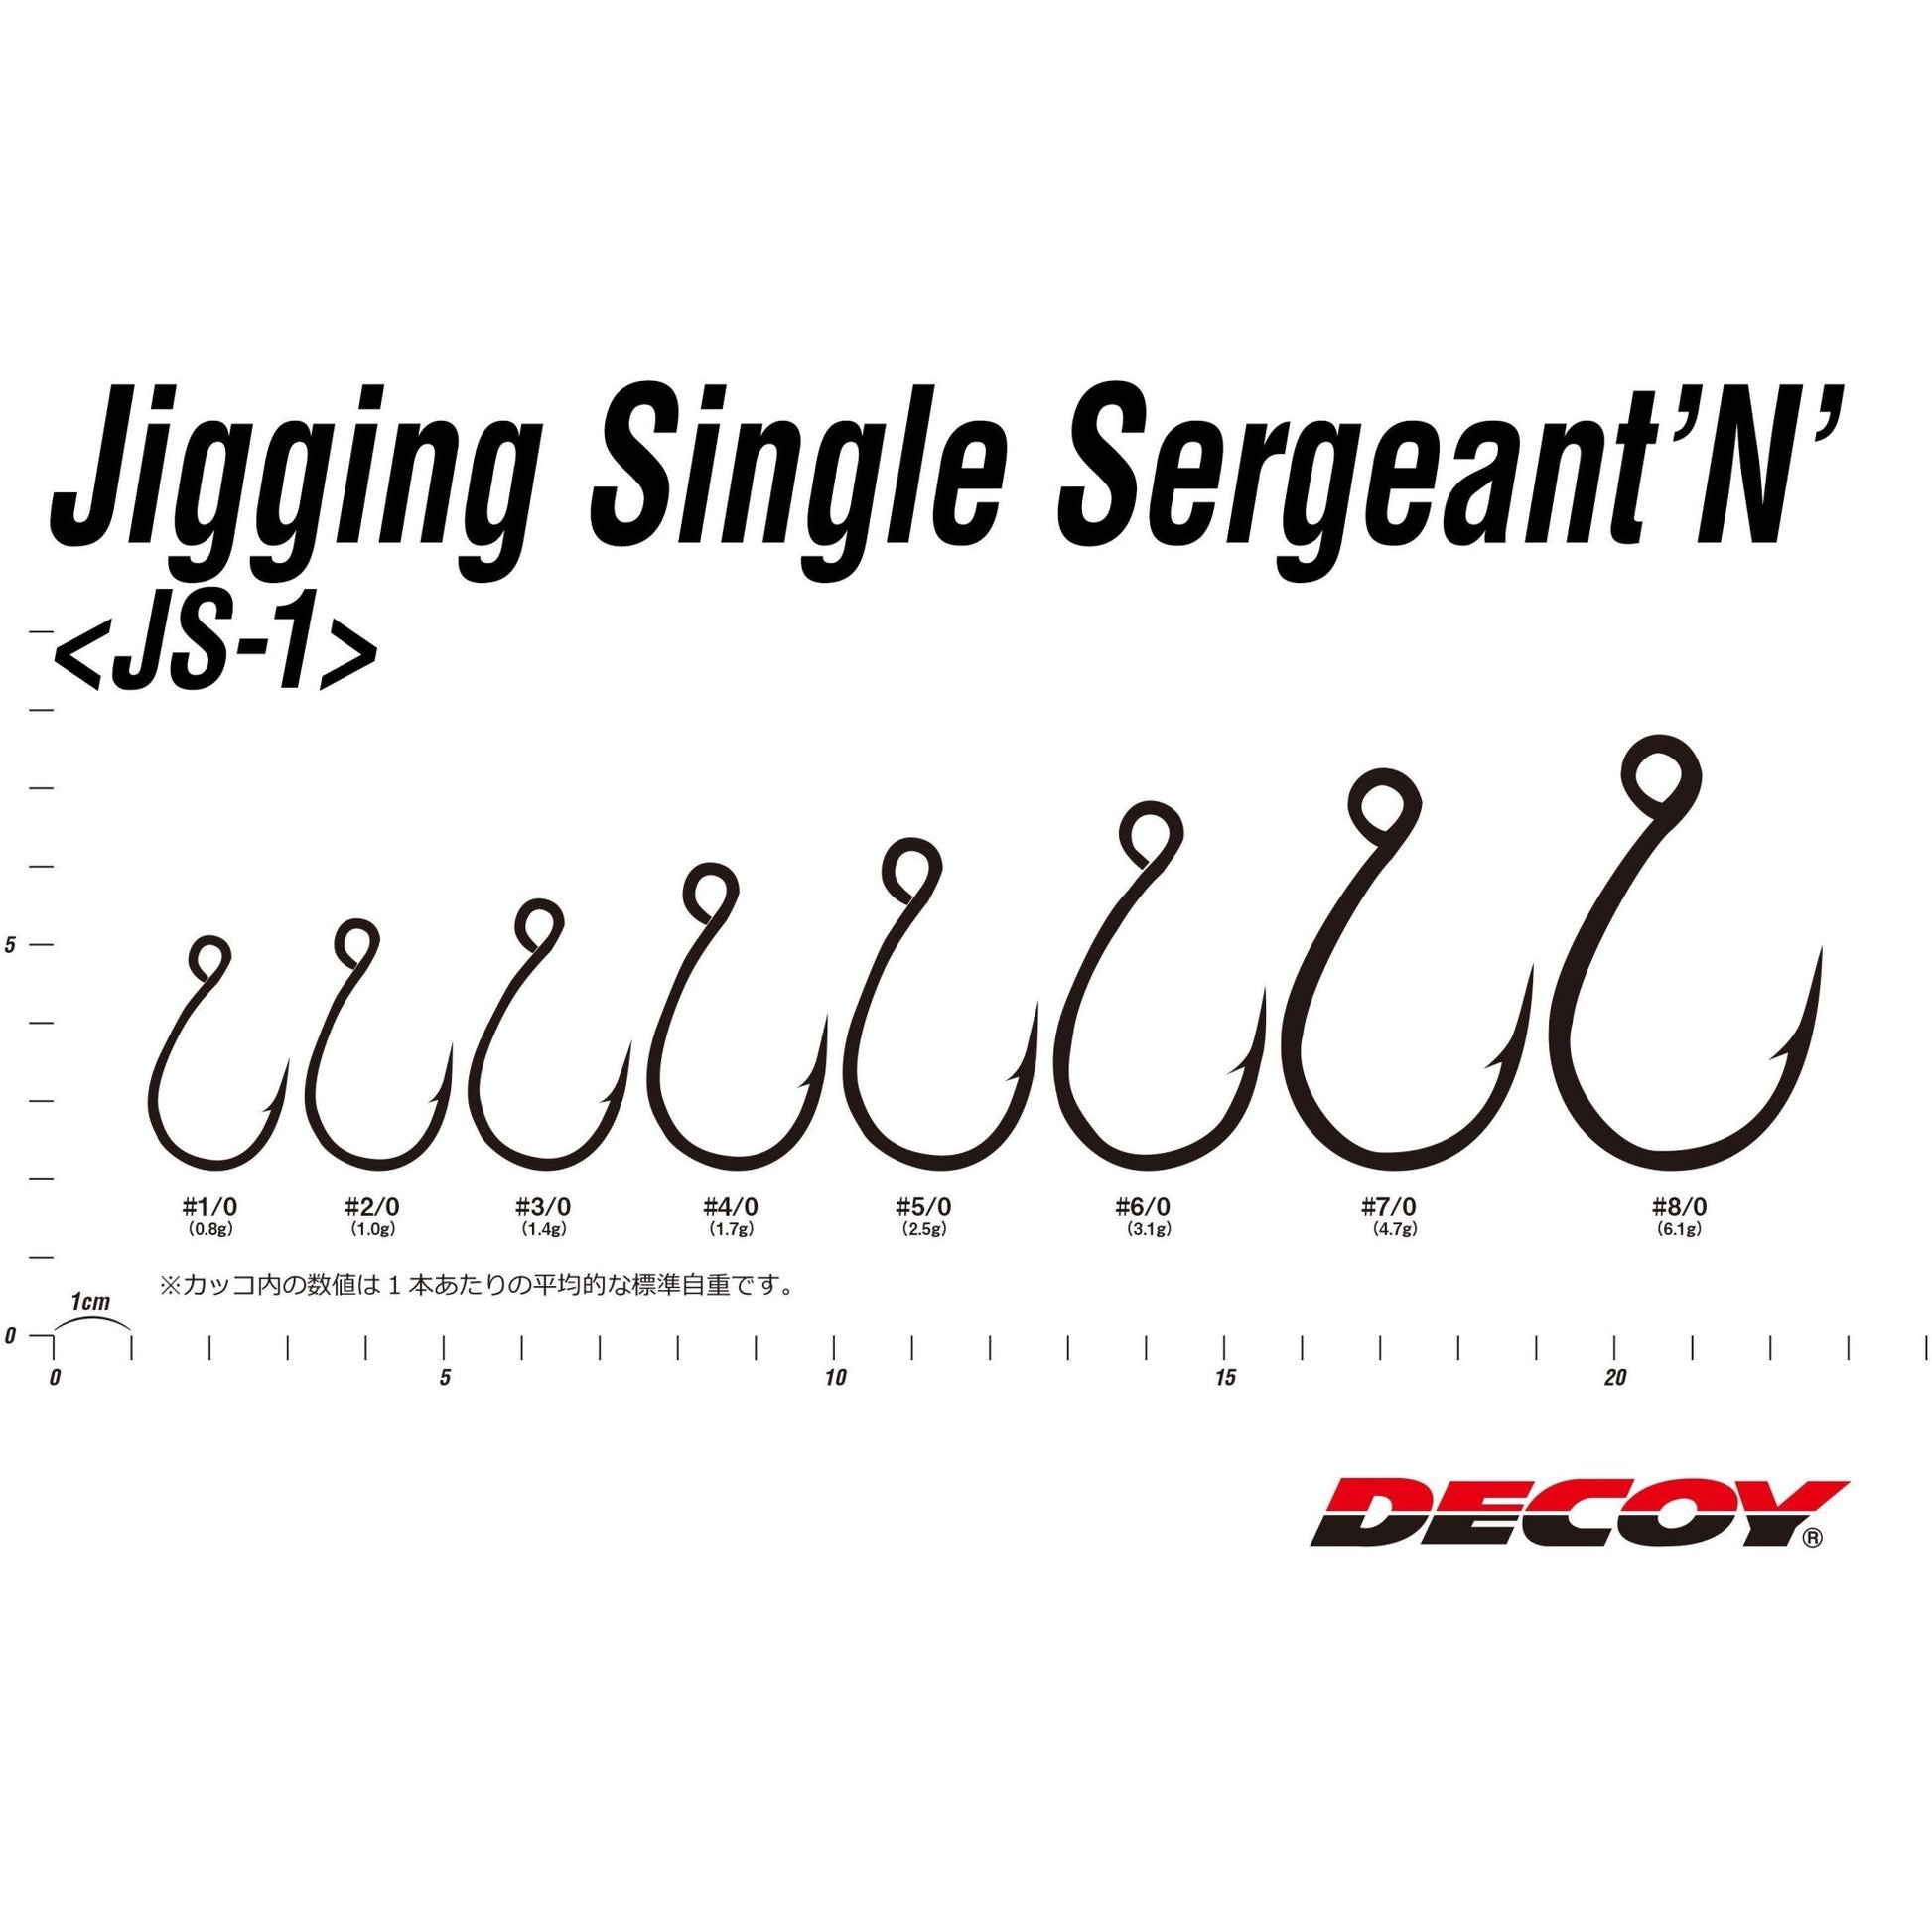 Single Hook - Decoy - JS1 Jigging Single Sergente N - The Fishermans Hut